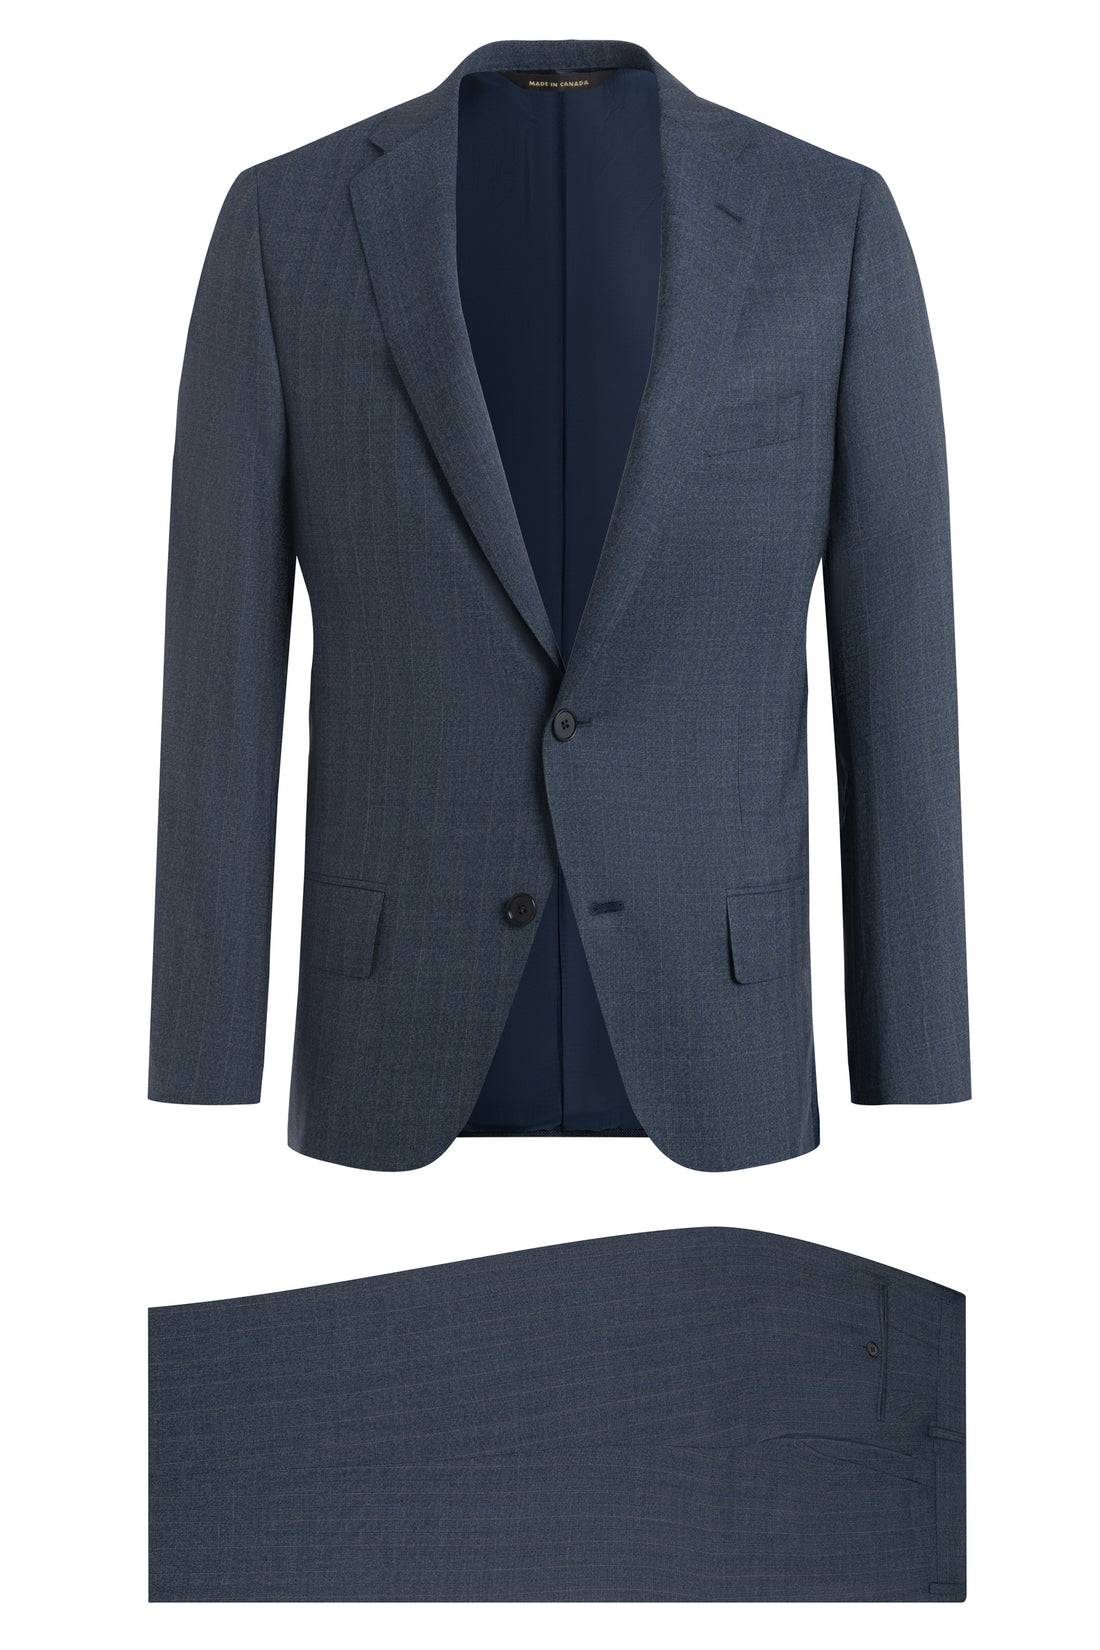 Slate Blue Wool B-fit Suit